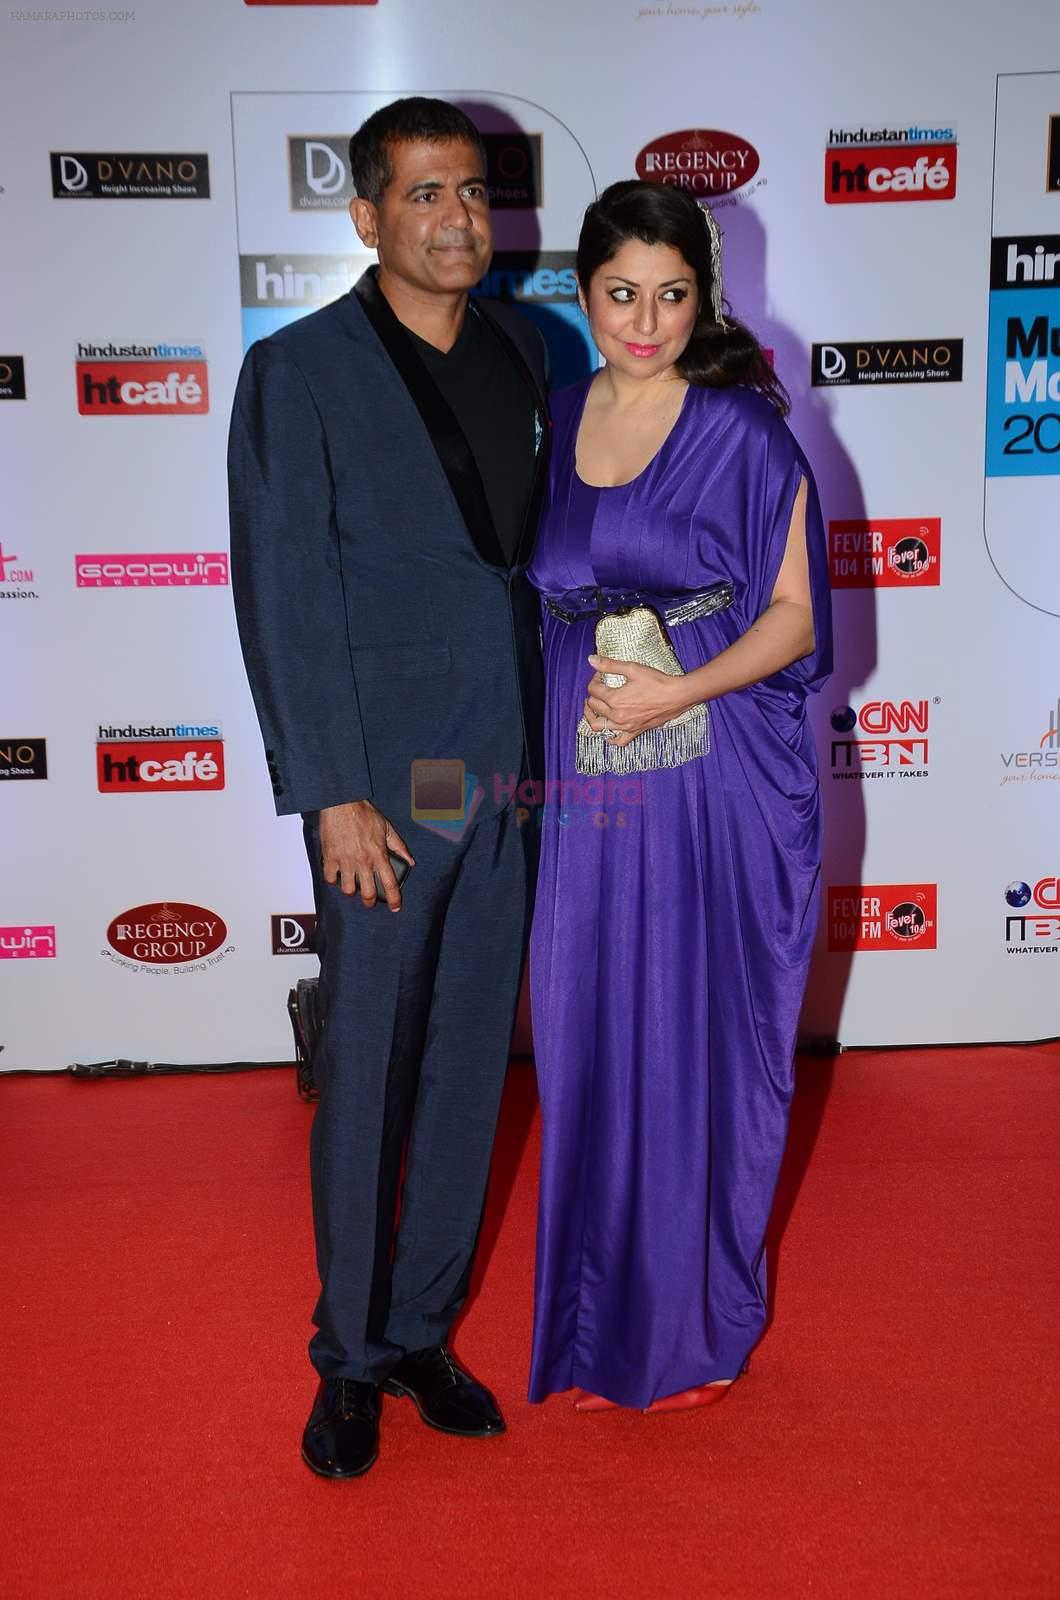 at HT Mumbai's Most Stylish Awards 2015 in Mumbai on 26th March 2015